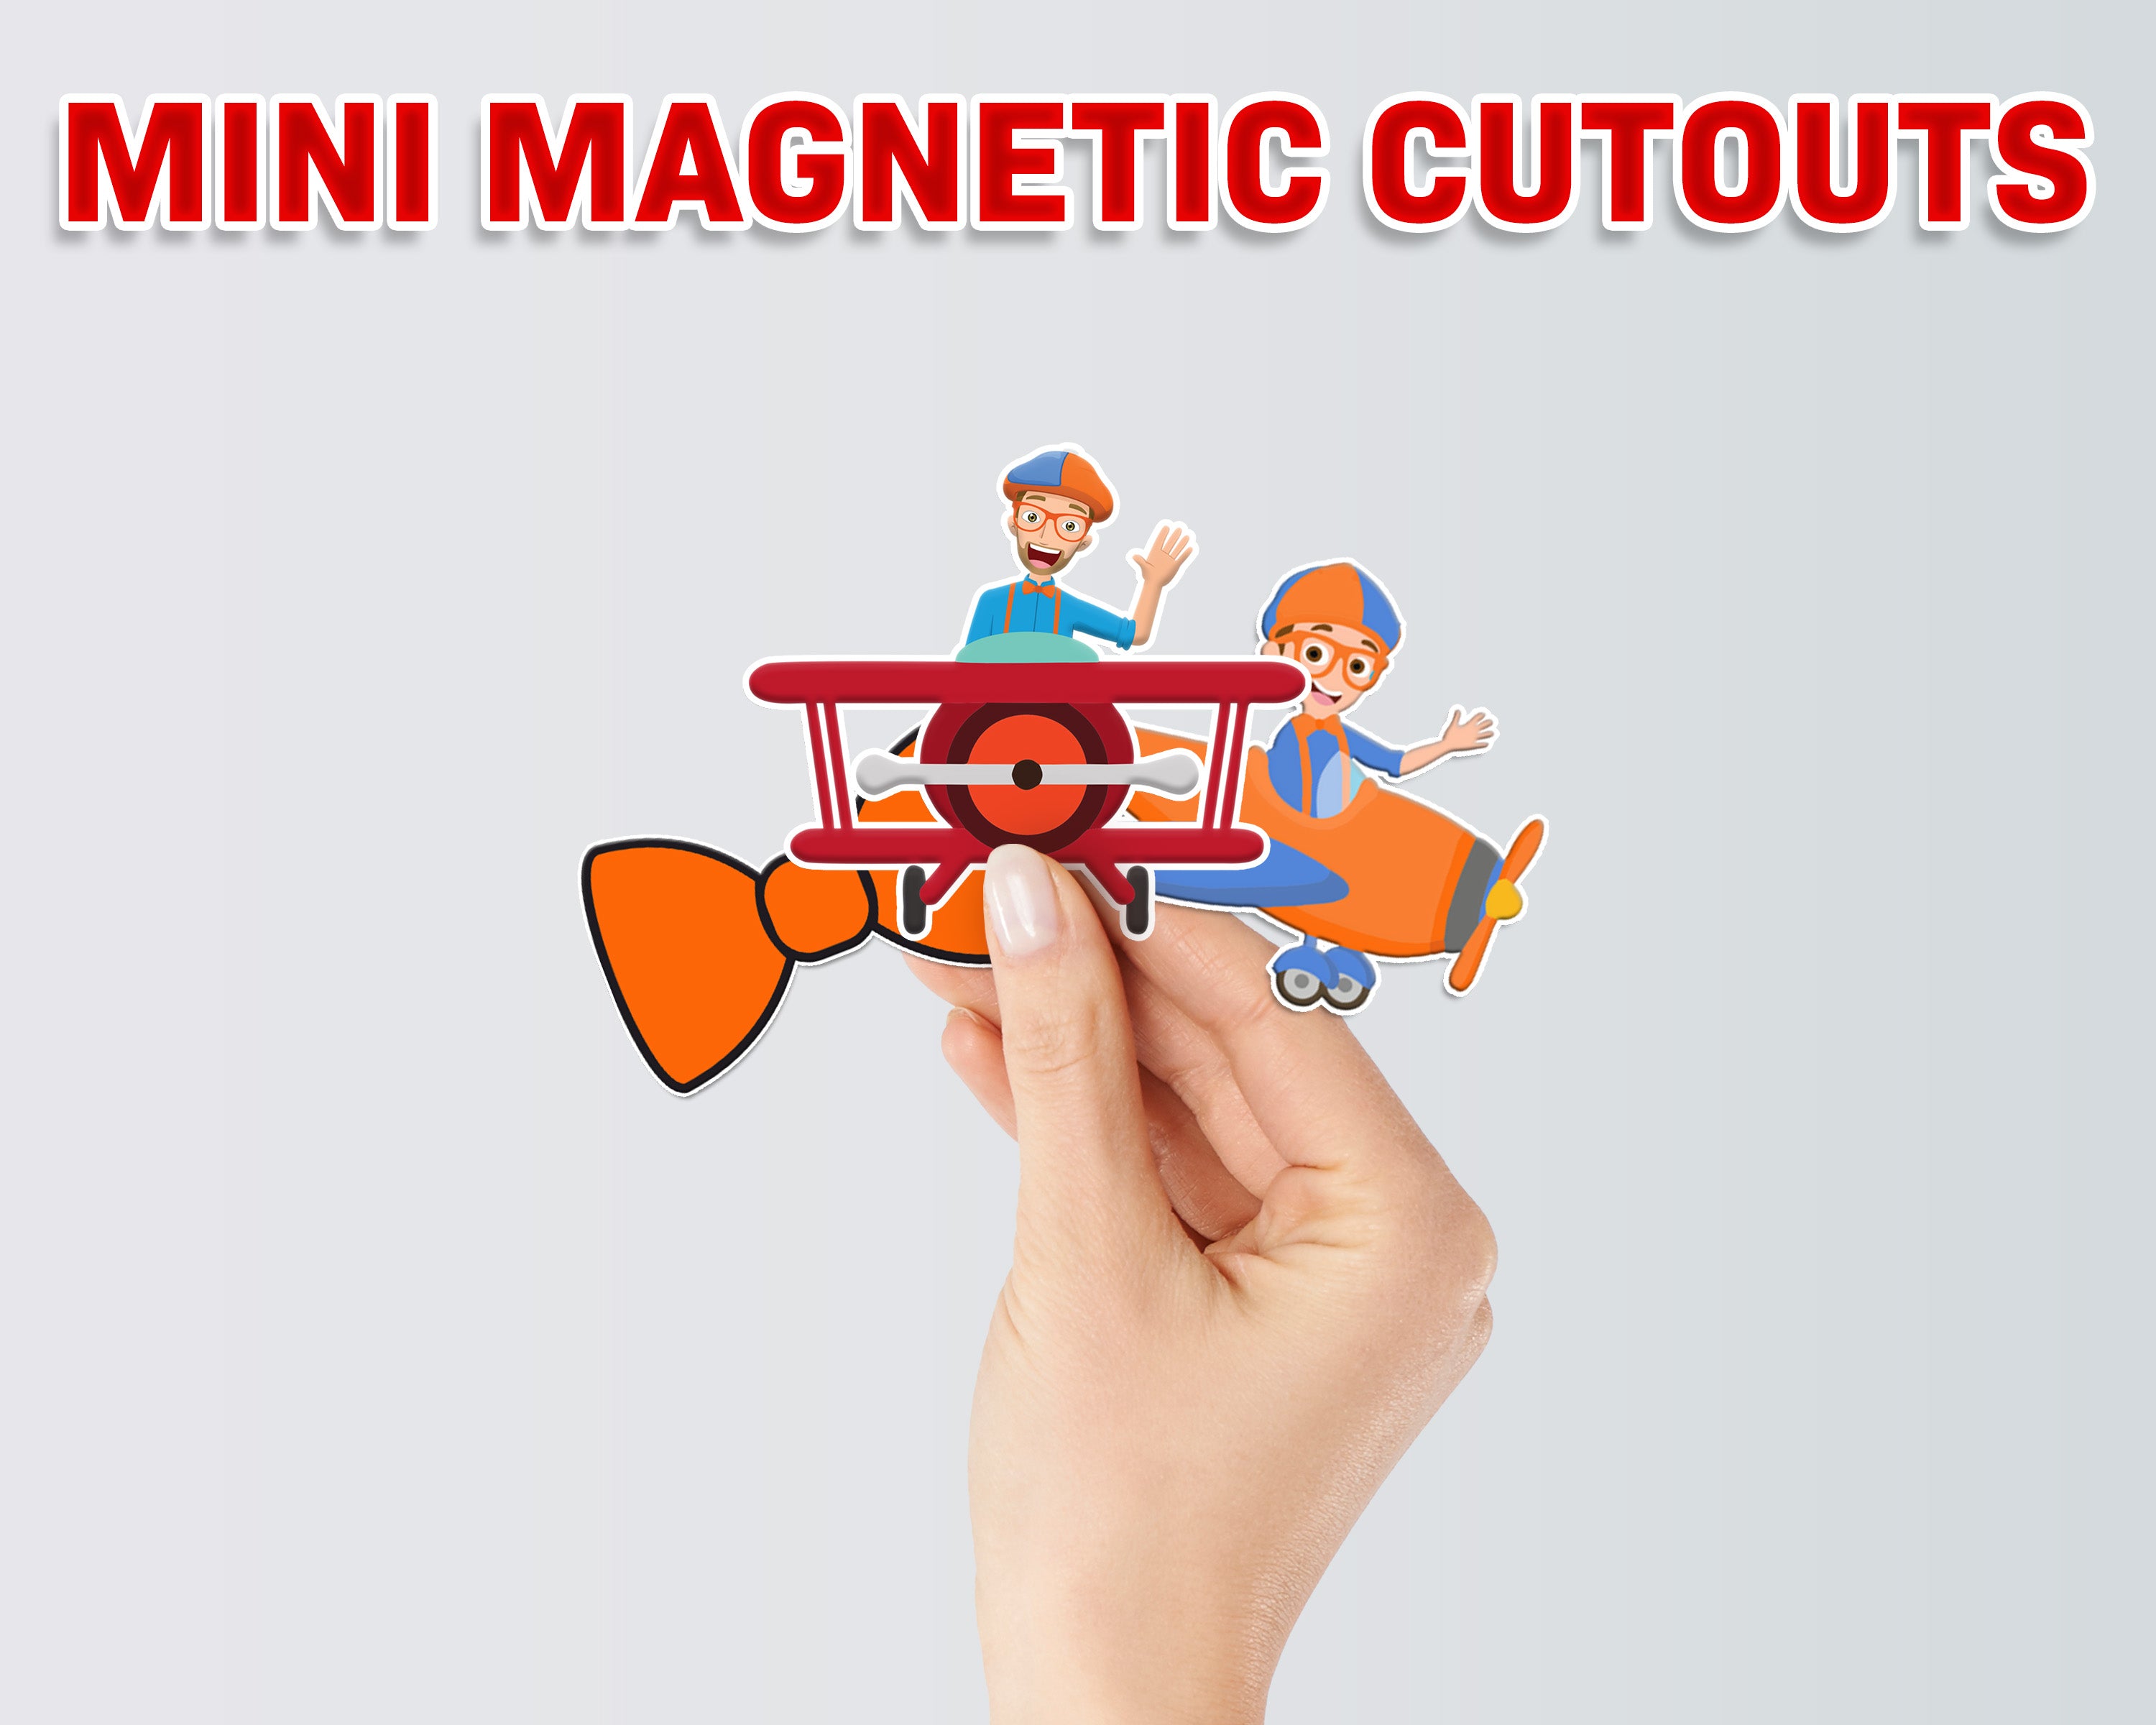 Blippi Theme Mini Magnetic Return Gift Pack